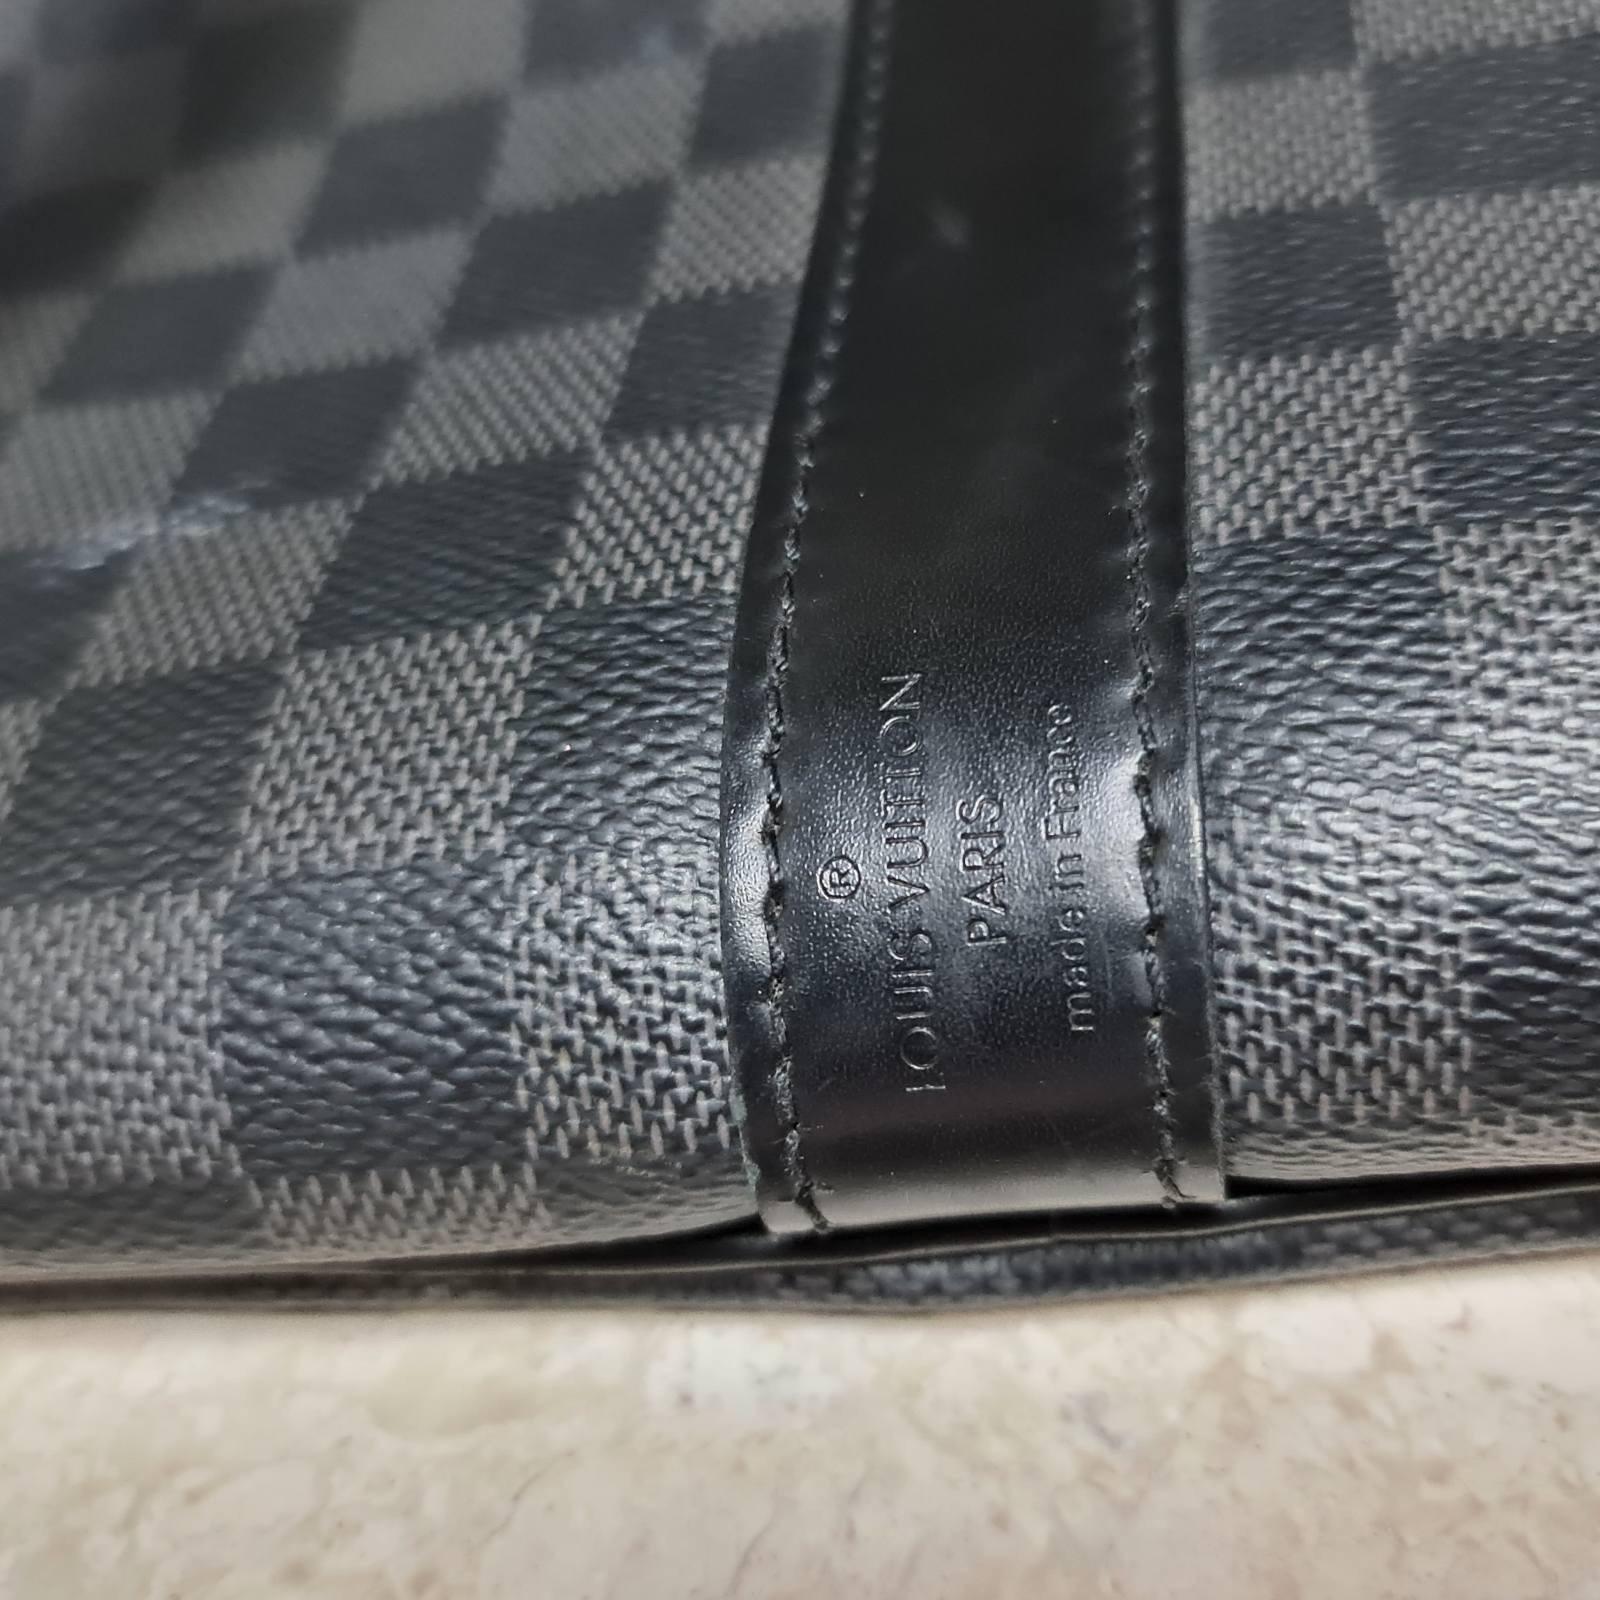 Black Louis Vuitton Damier Graphite Canvas Keepall Bandouliére 55 Travel Bag